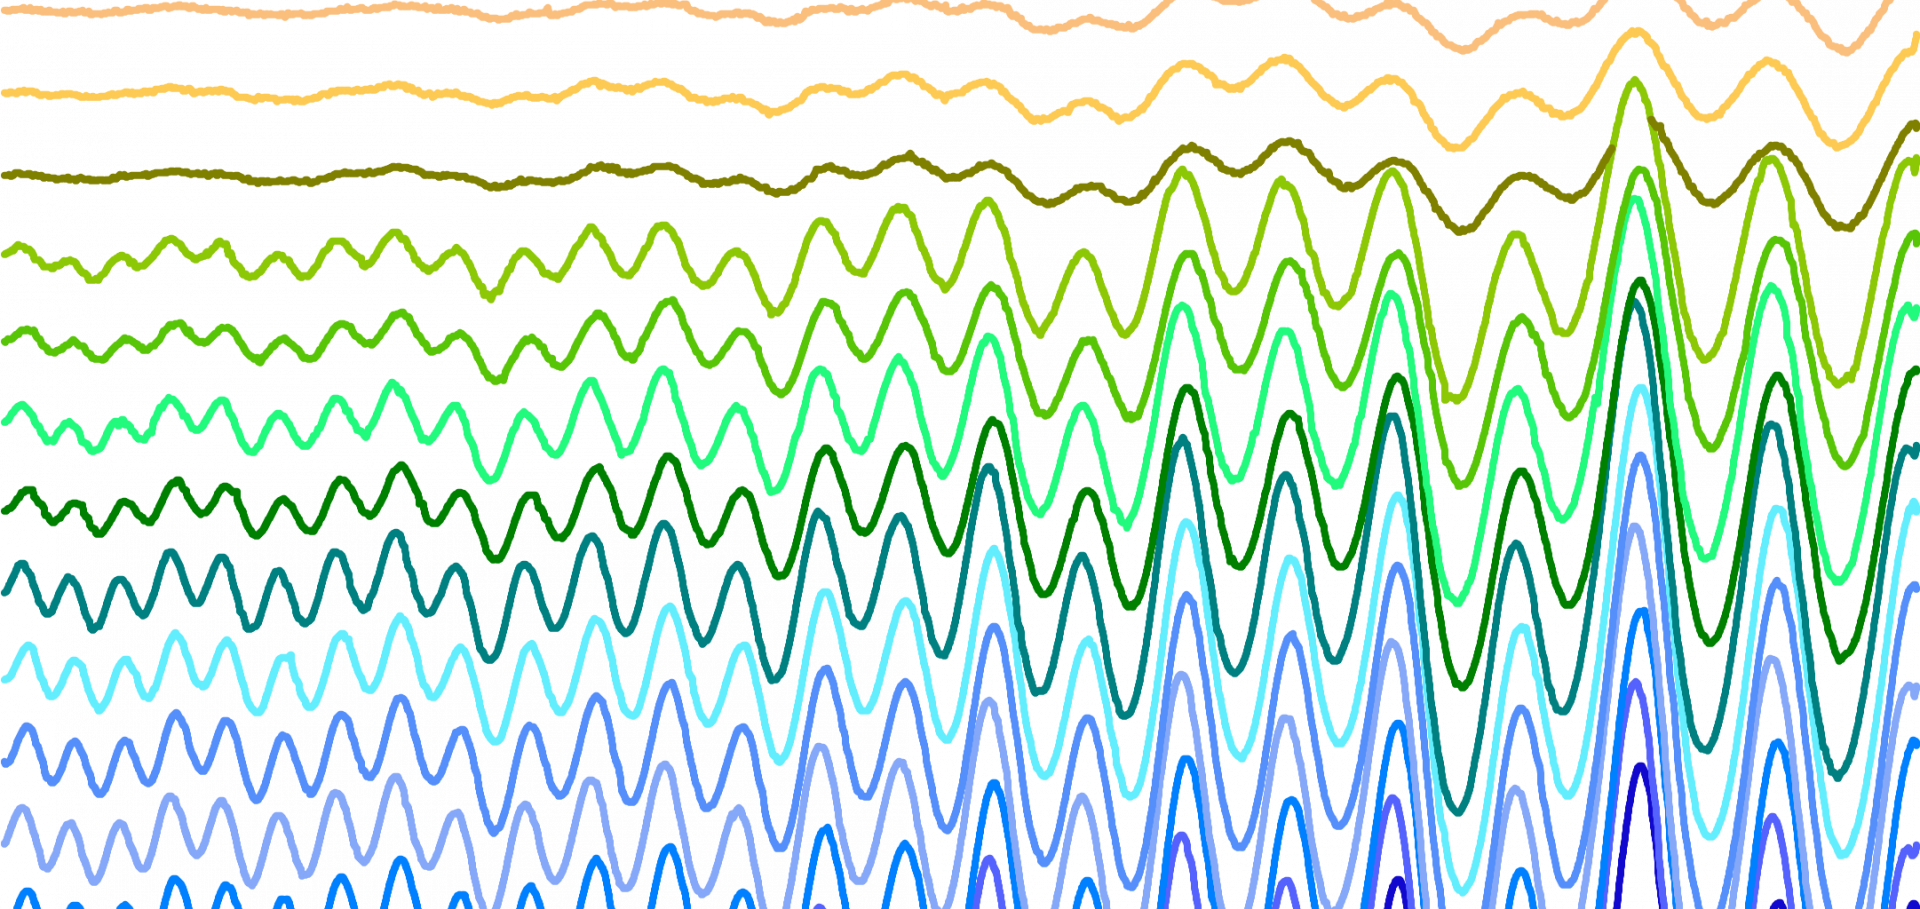 Quantum oscillations